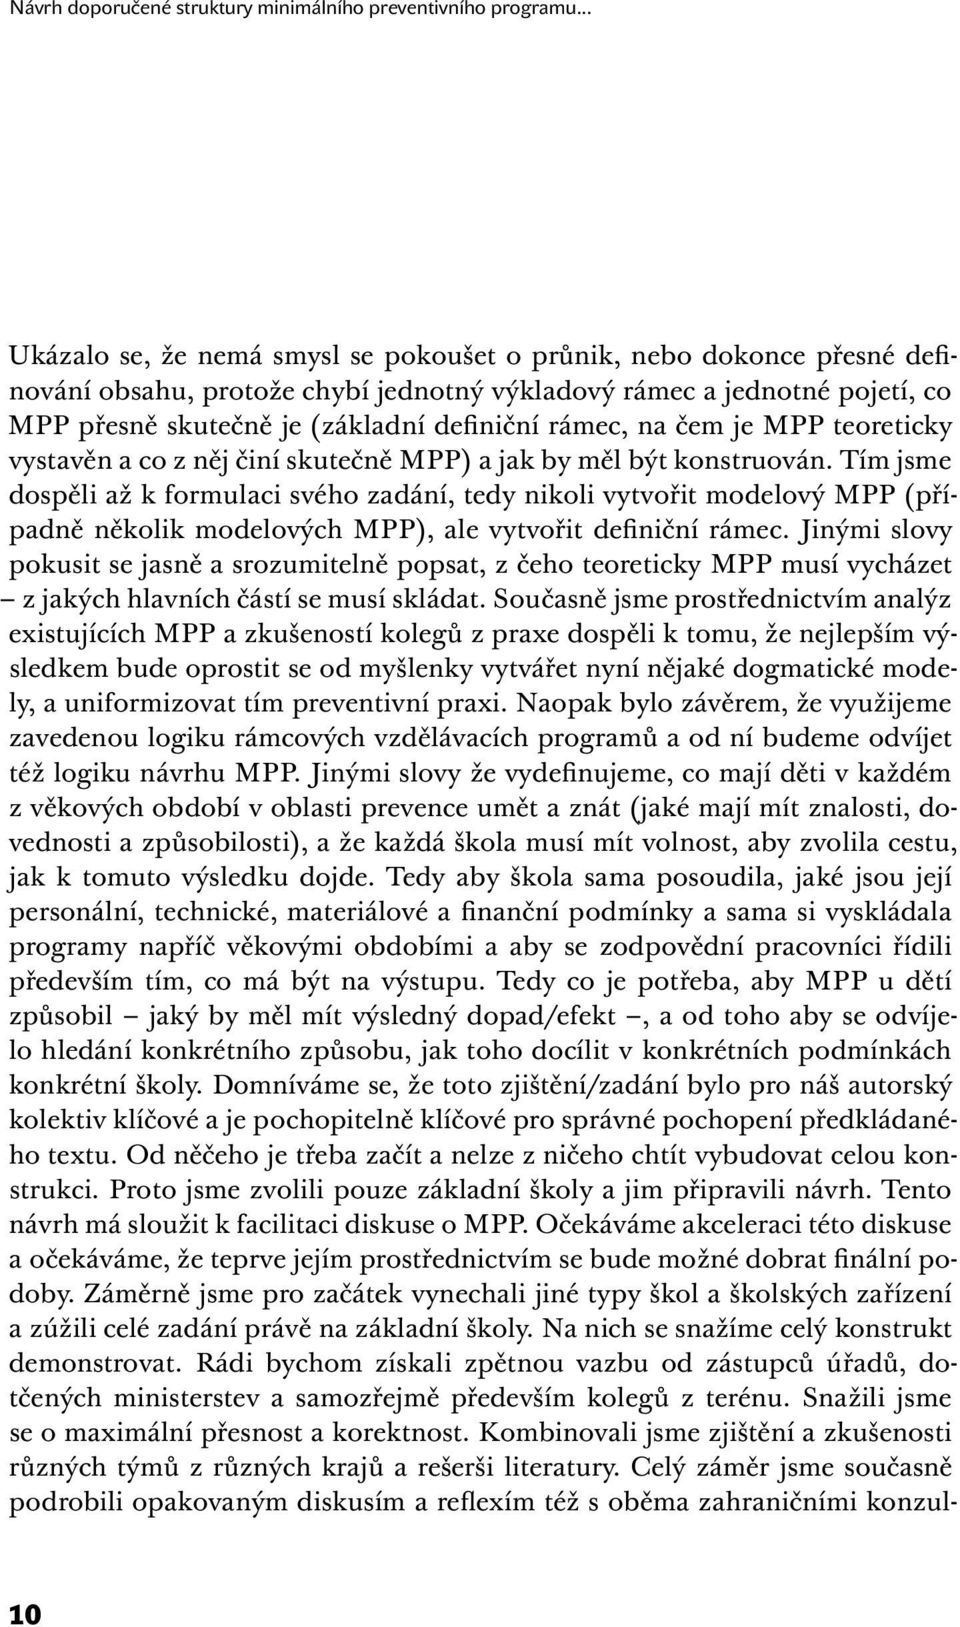 rámec, na čem je MPP teoreticky vystavěn a co z něj činí skutečně MPP) a jak by měl být konstruován.